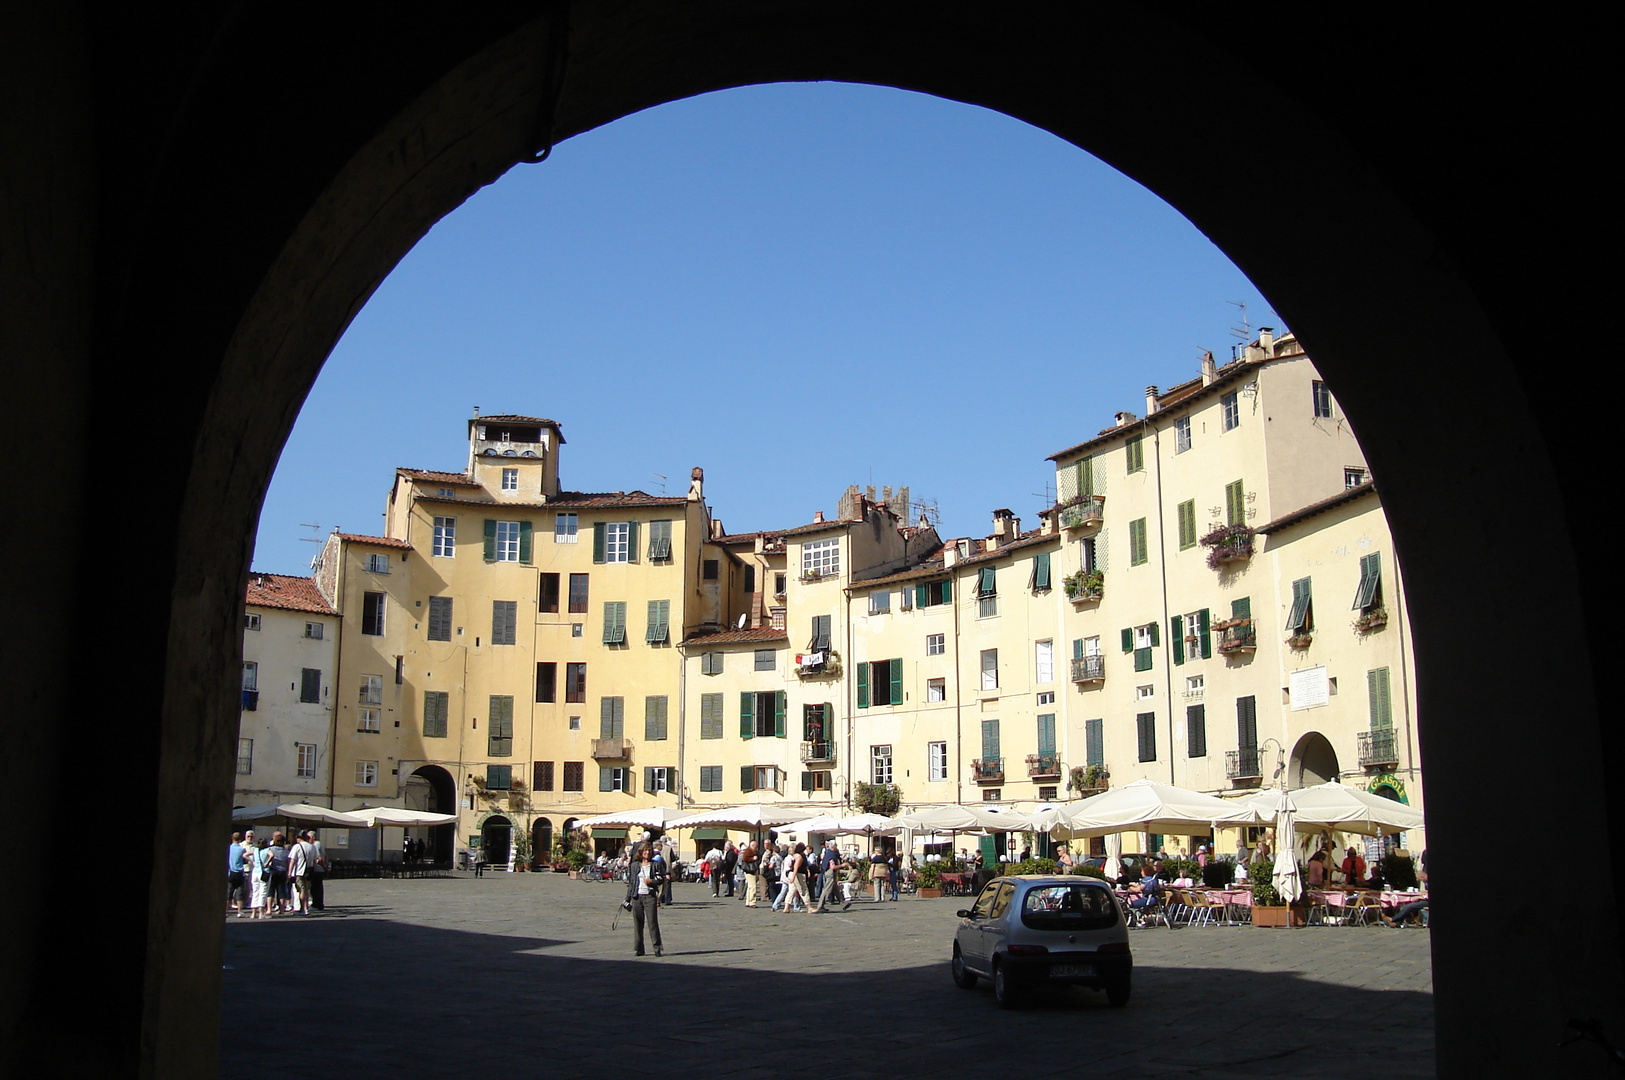 Durchblick auf die Piazza del'Amfiteatro in Lucca/Toscana